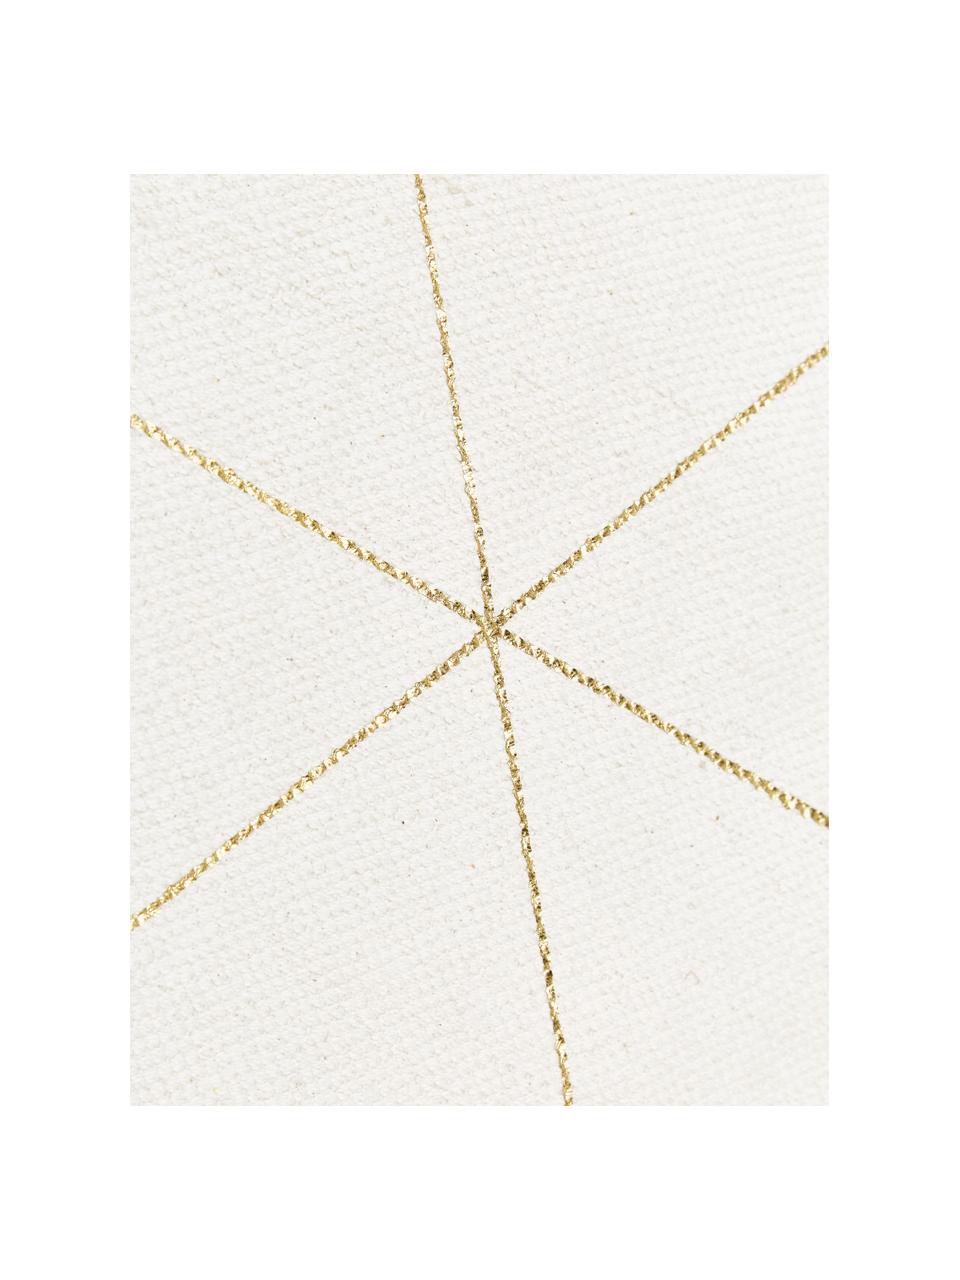 Tkany na płasko chodnik z bawełny Yena, Beżowy, złoty, S 80 x D 250 cm